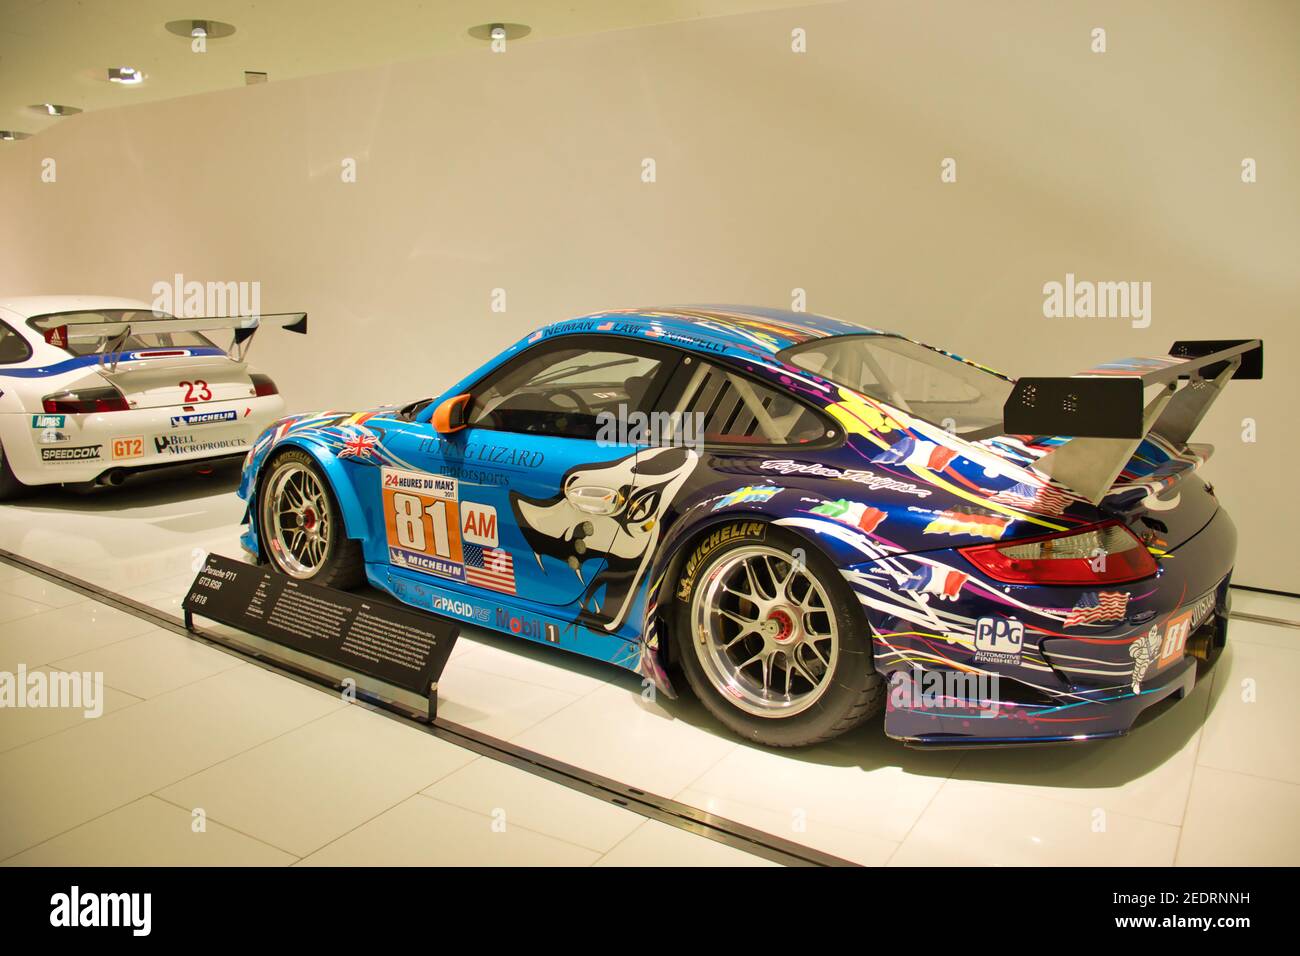 Blauer Porsche 911 GT3 RSR Racecar PM-Display im Porsche Museum in  Stuttgart Stockfotografie - Alamy